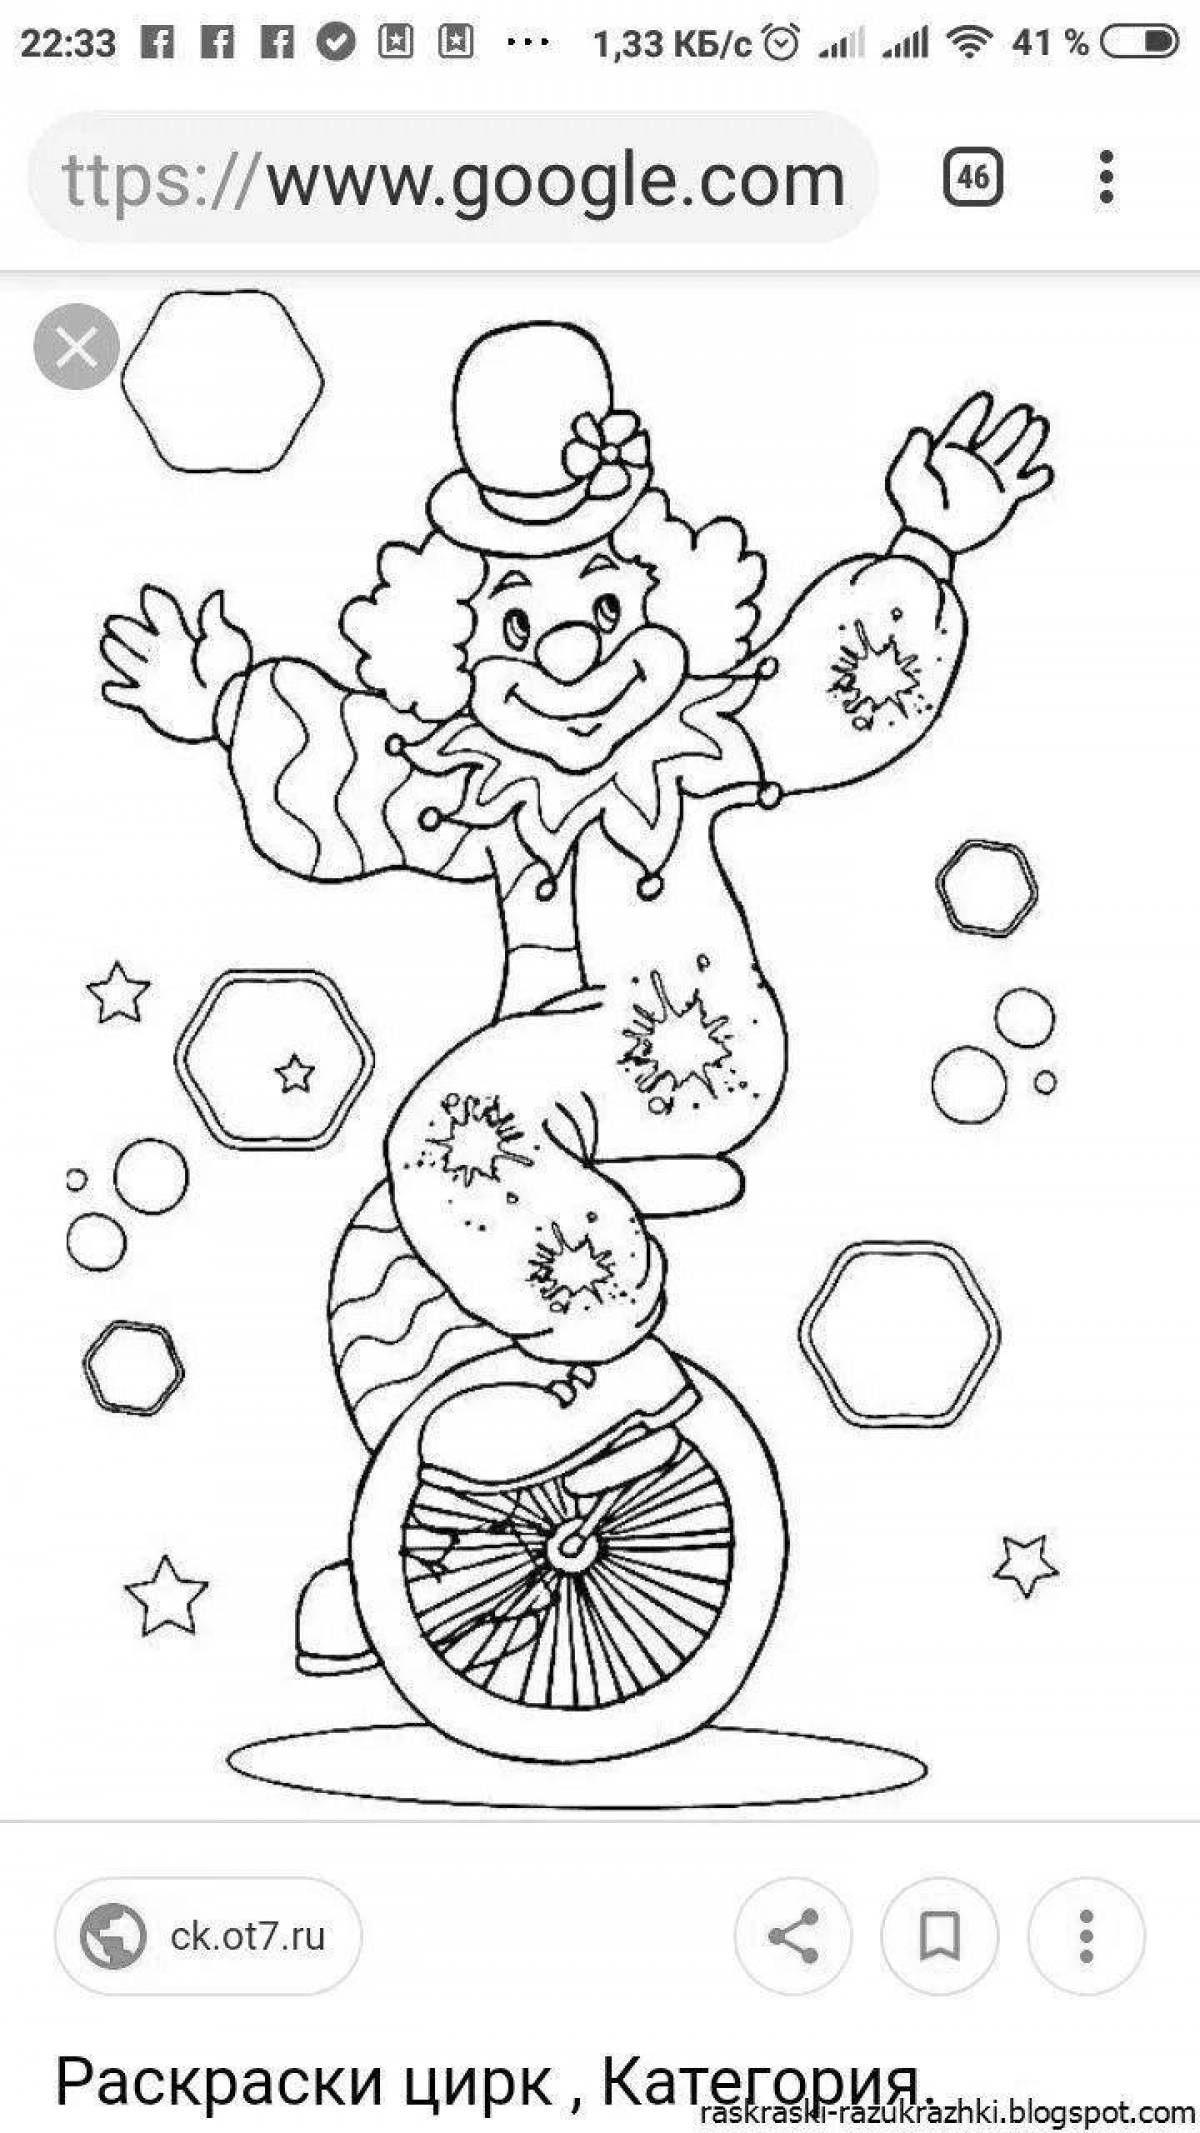 Увлекательная цирковая раскраска для детей 4-5 лет